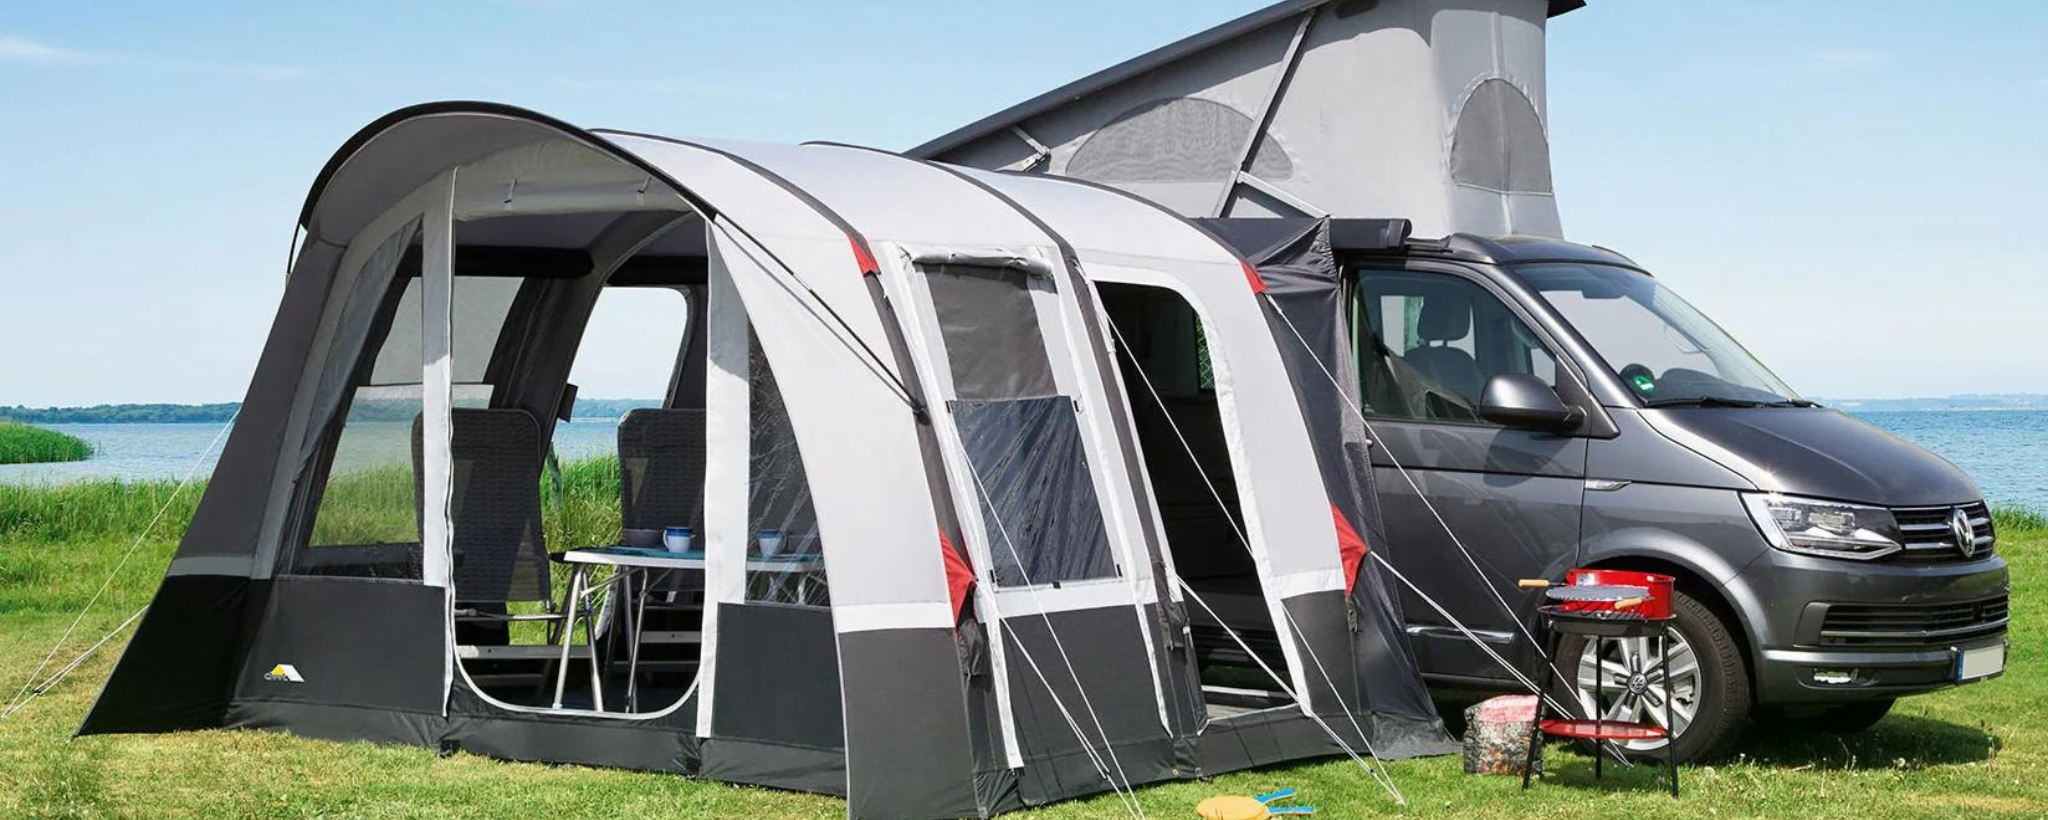 DWT Zelt, DWT Zelte, DWT Zelte Camping Neuss, DWT Zelt kaufen